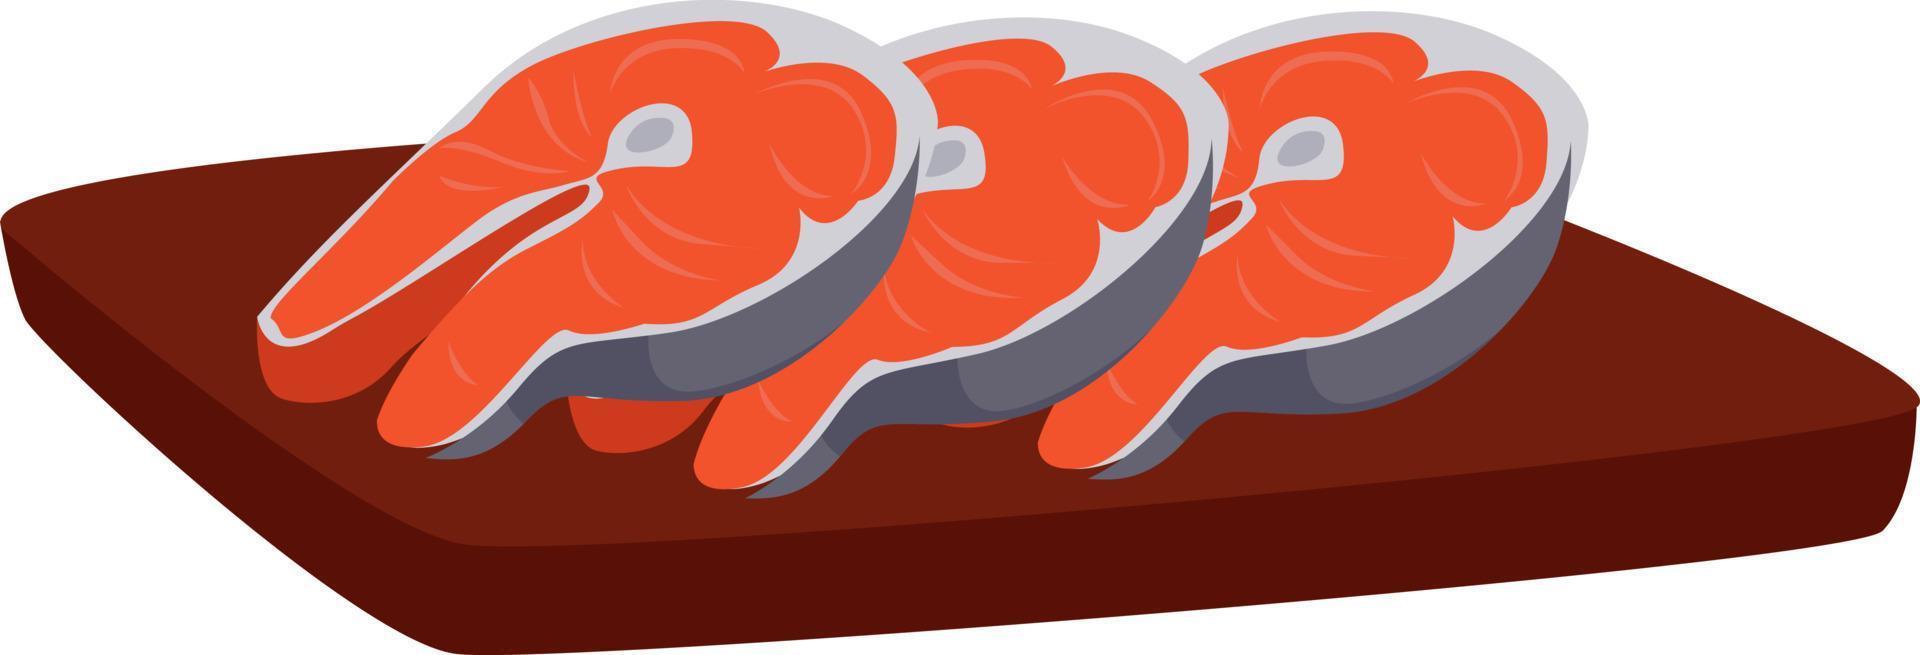 três fatias de salmão, ilustração, vetor em fundo branco.